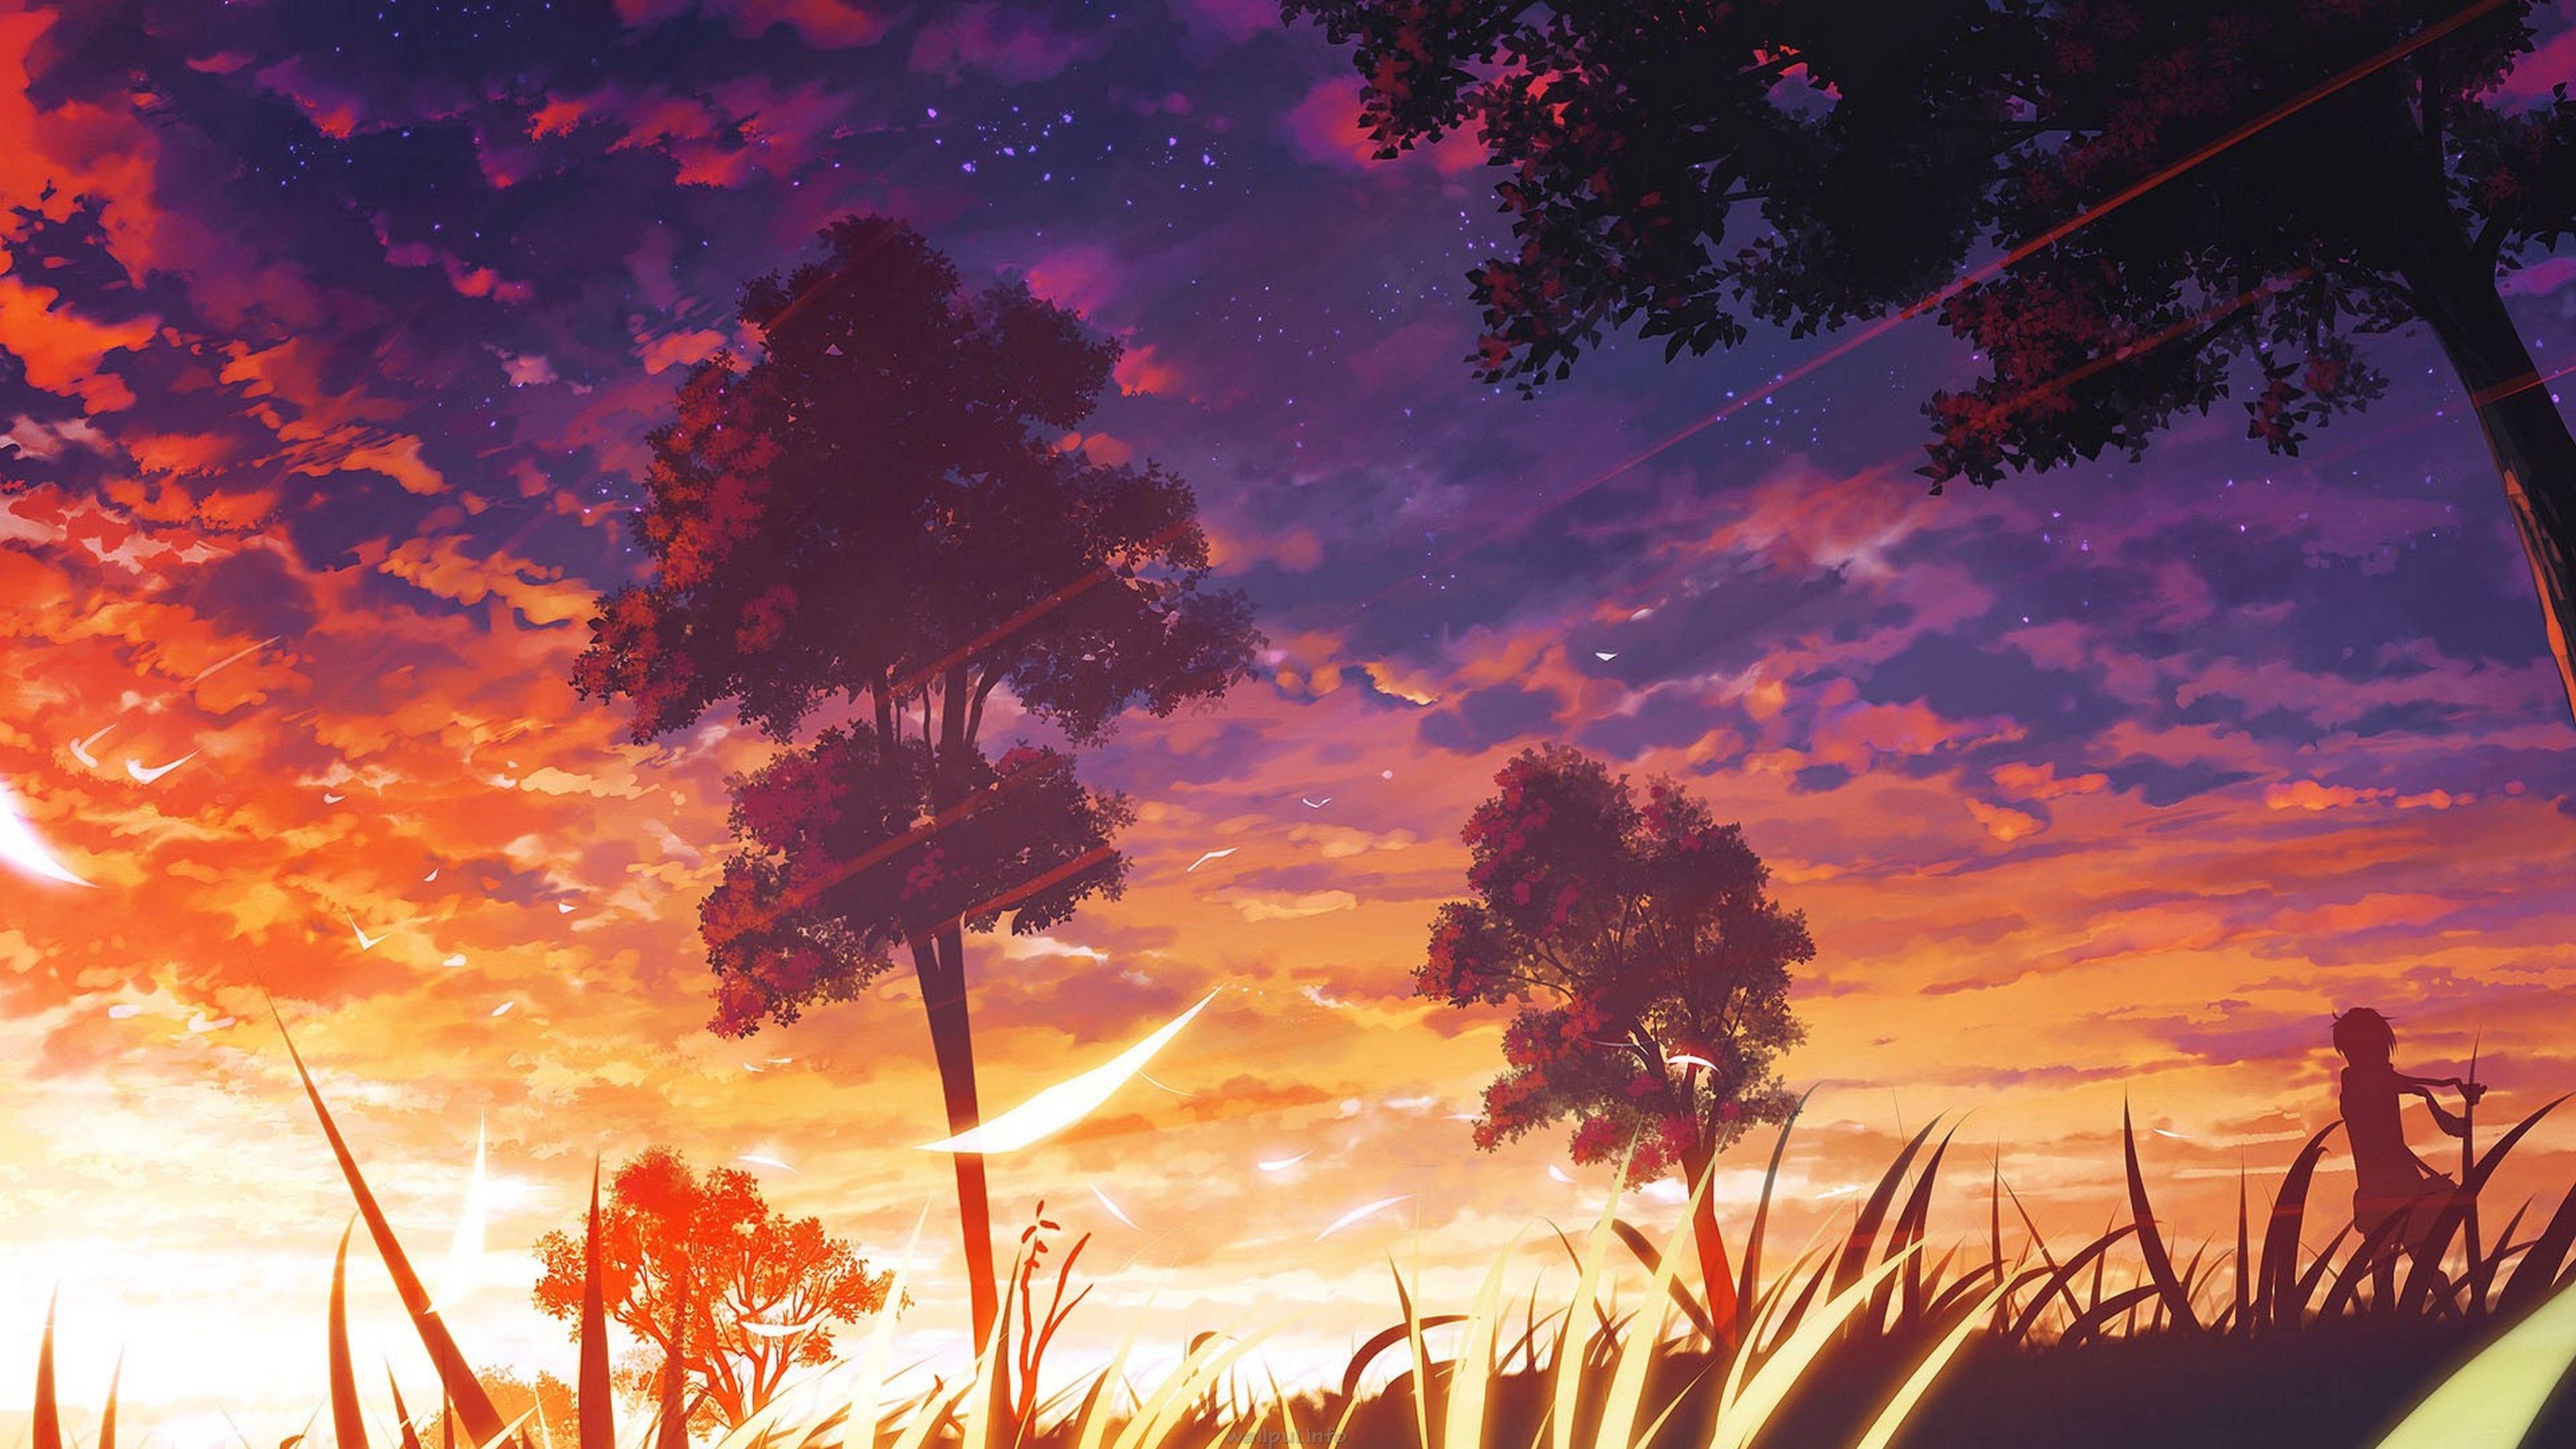 Dark Anime Wallpapers - Top 35 Best Dark Anime Wallpapers Download